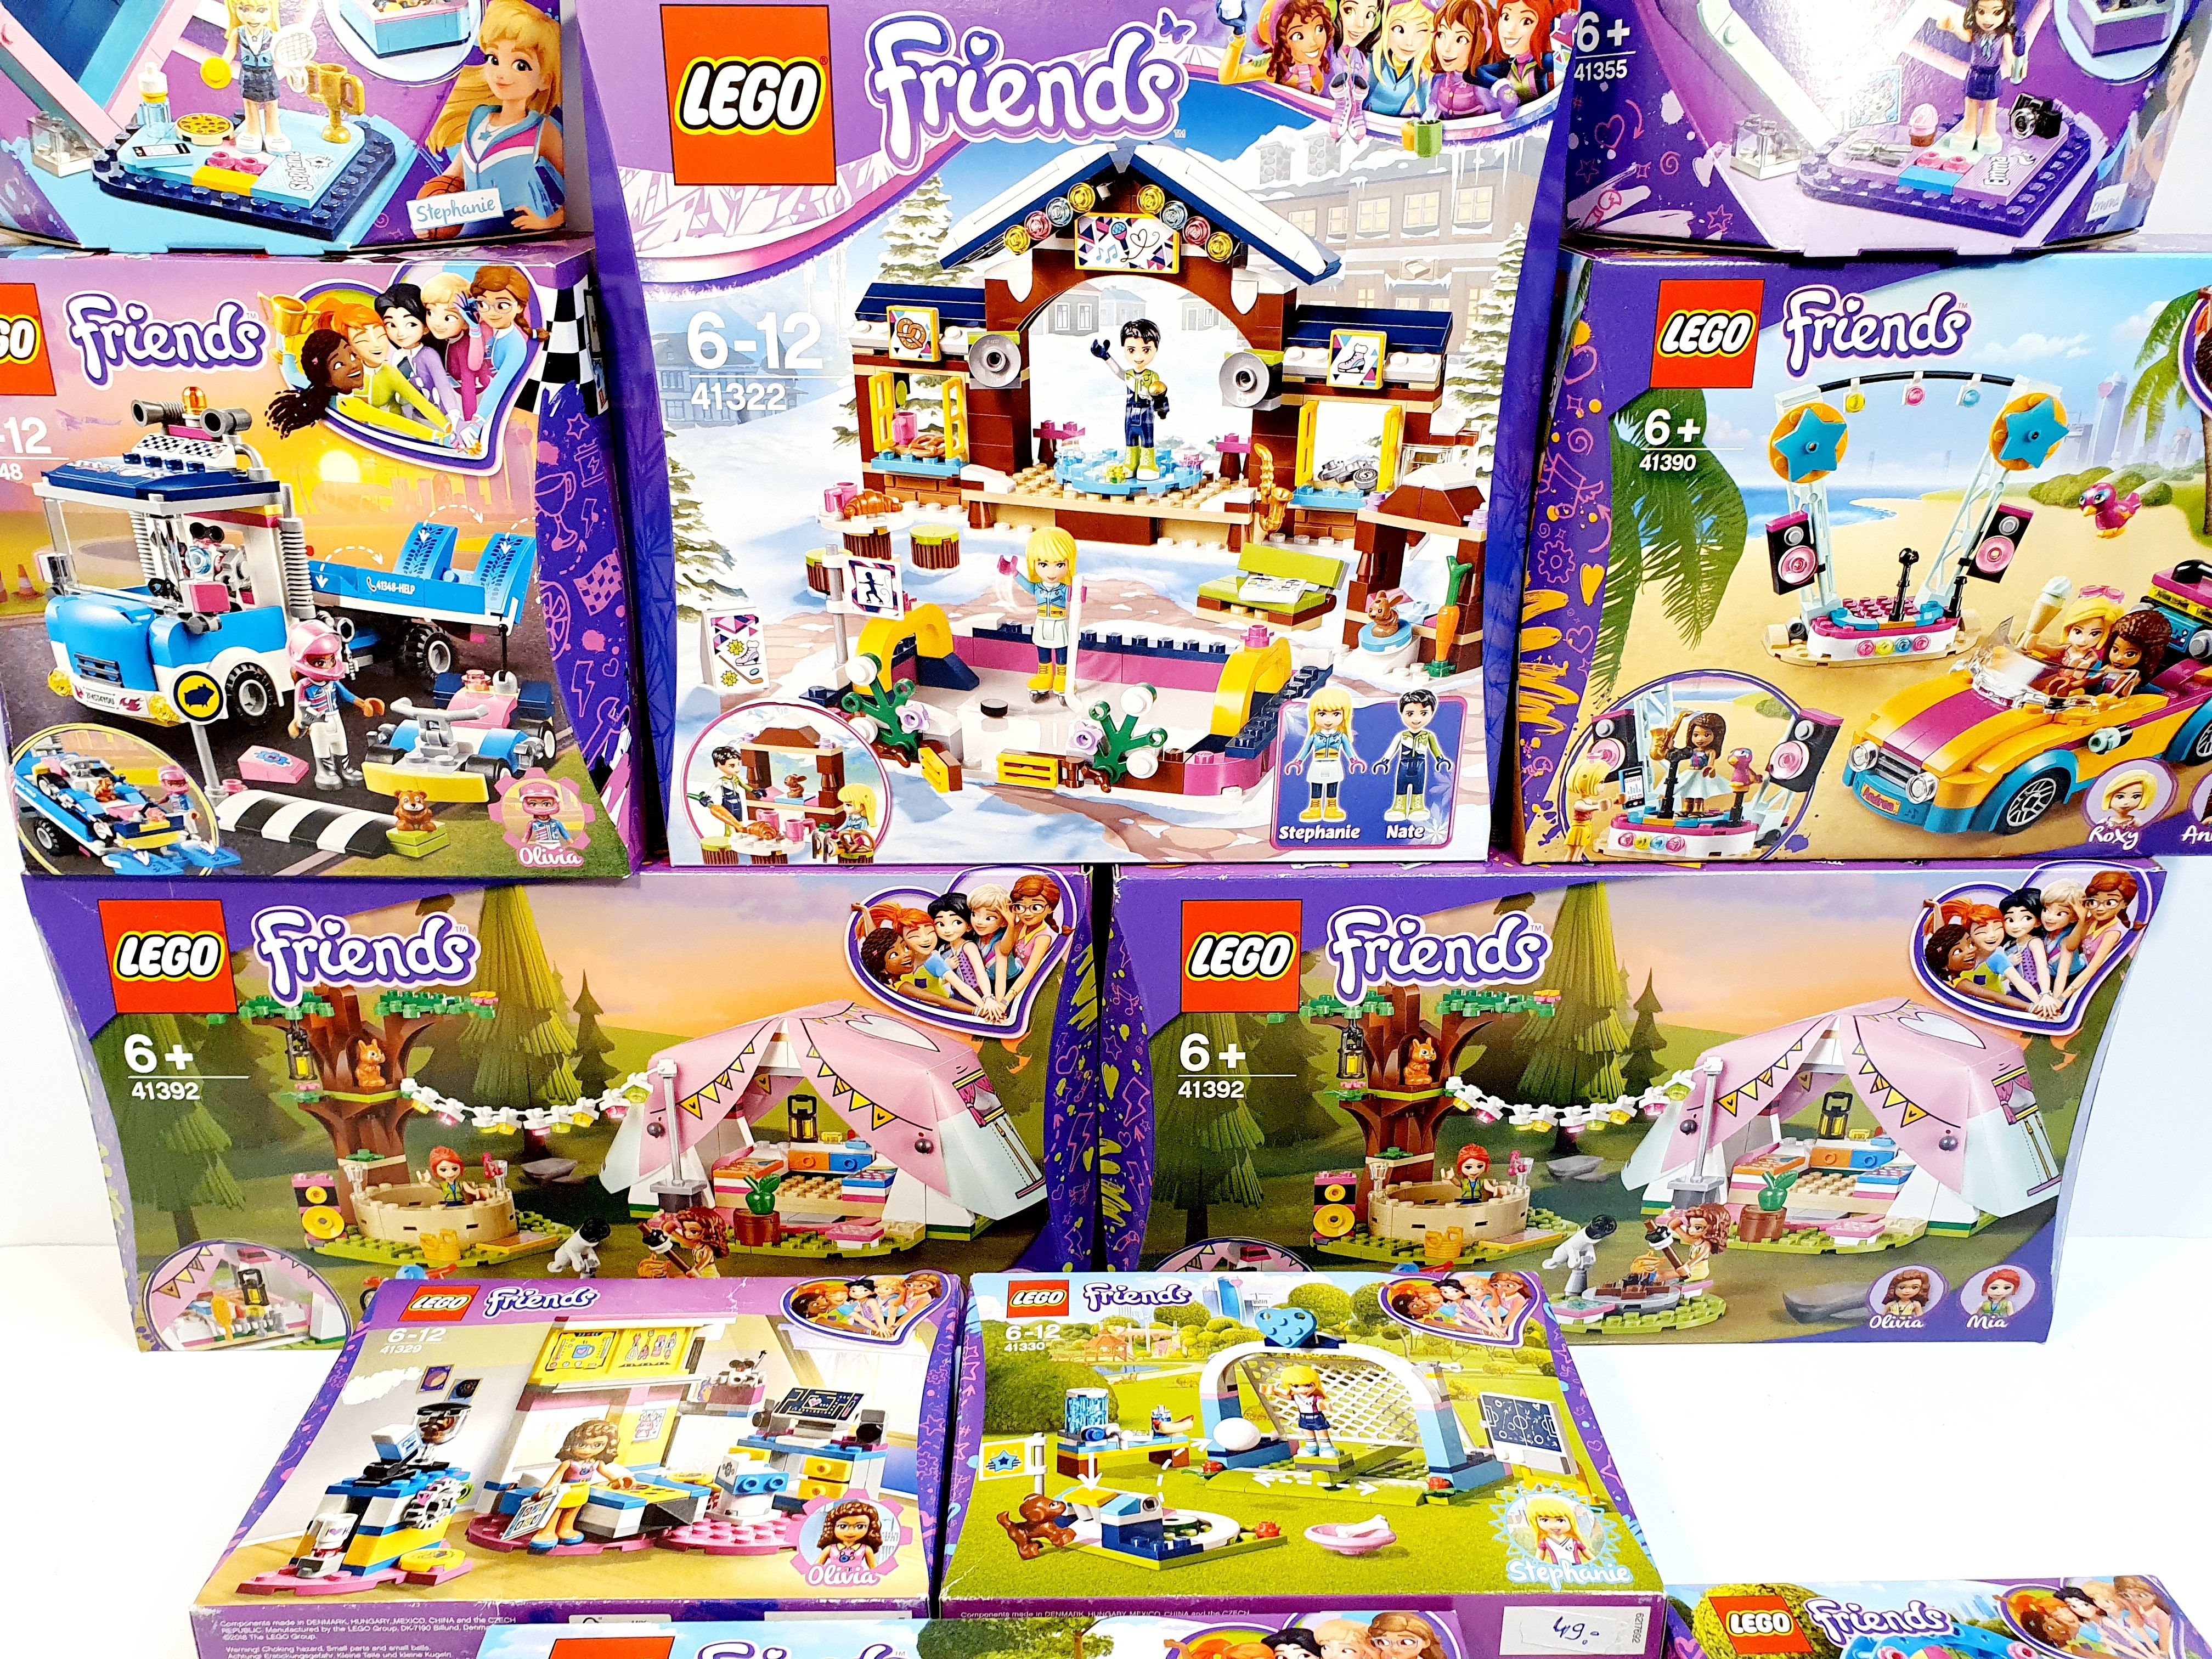 LEGO Friends - Klocki Lego OKAZJA Promocja